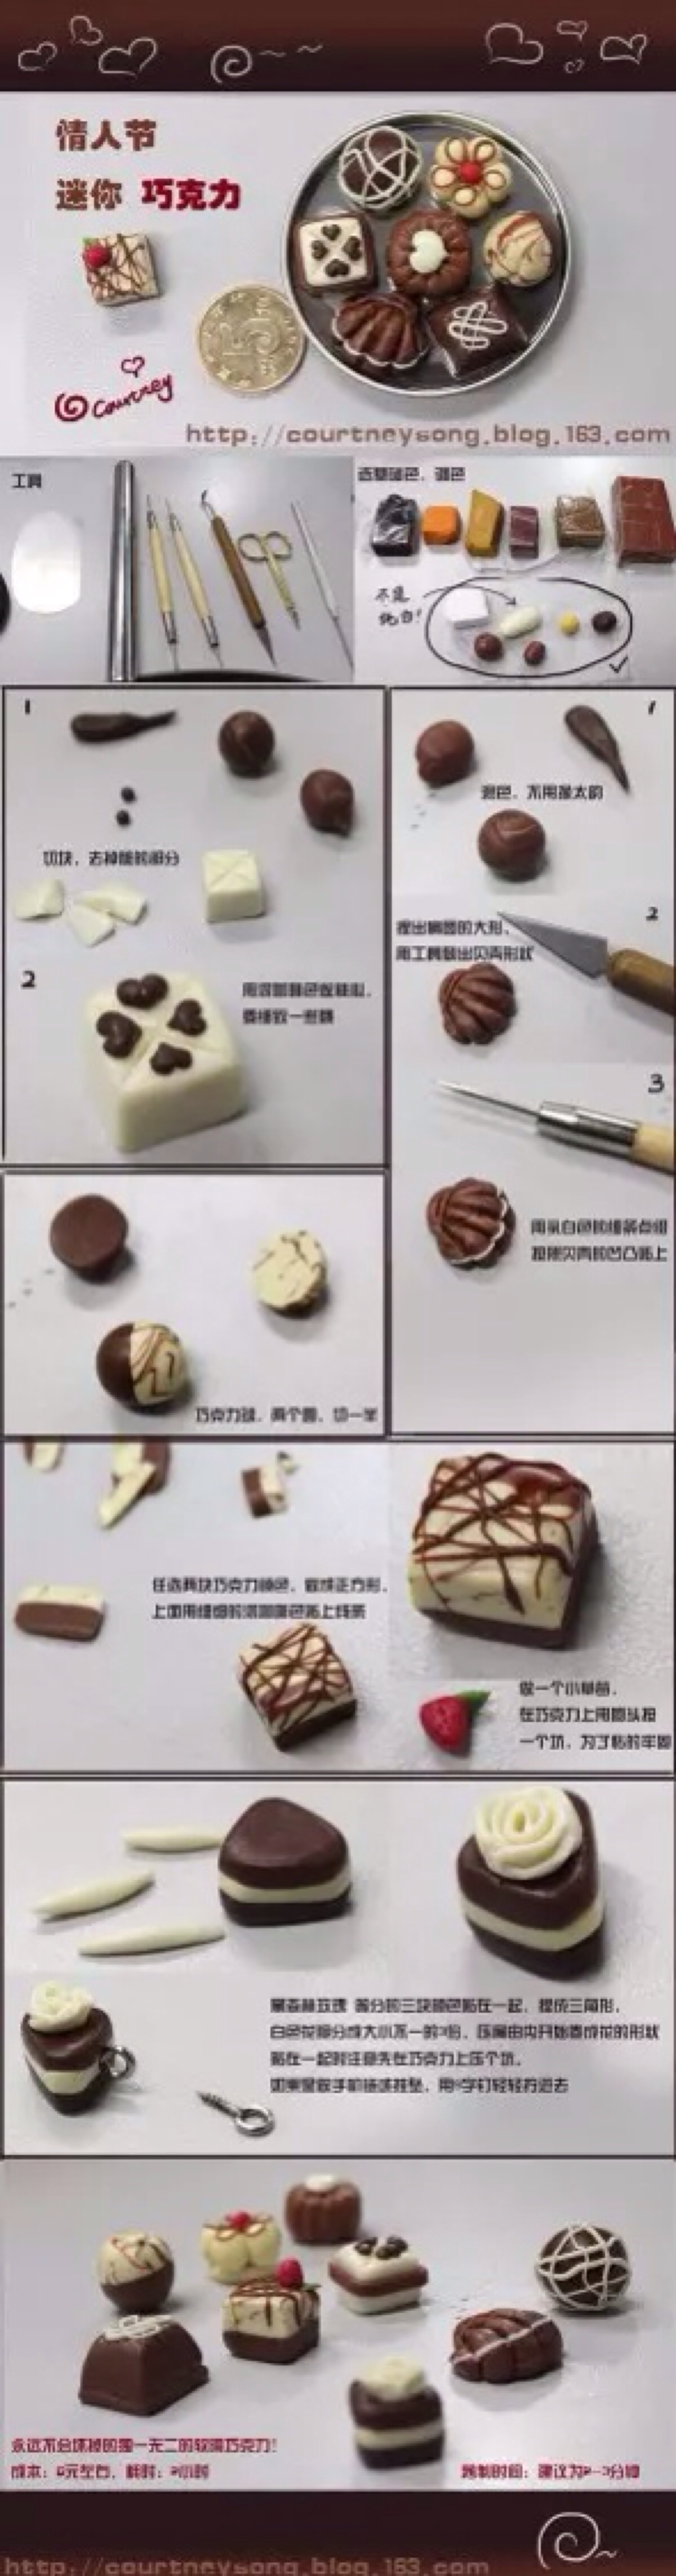 彩泥蛋糕制作教程简单图片